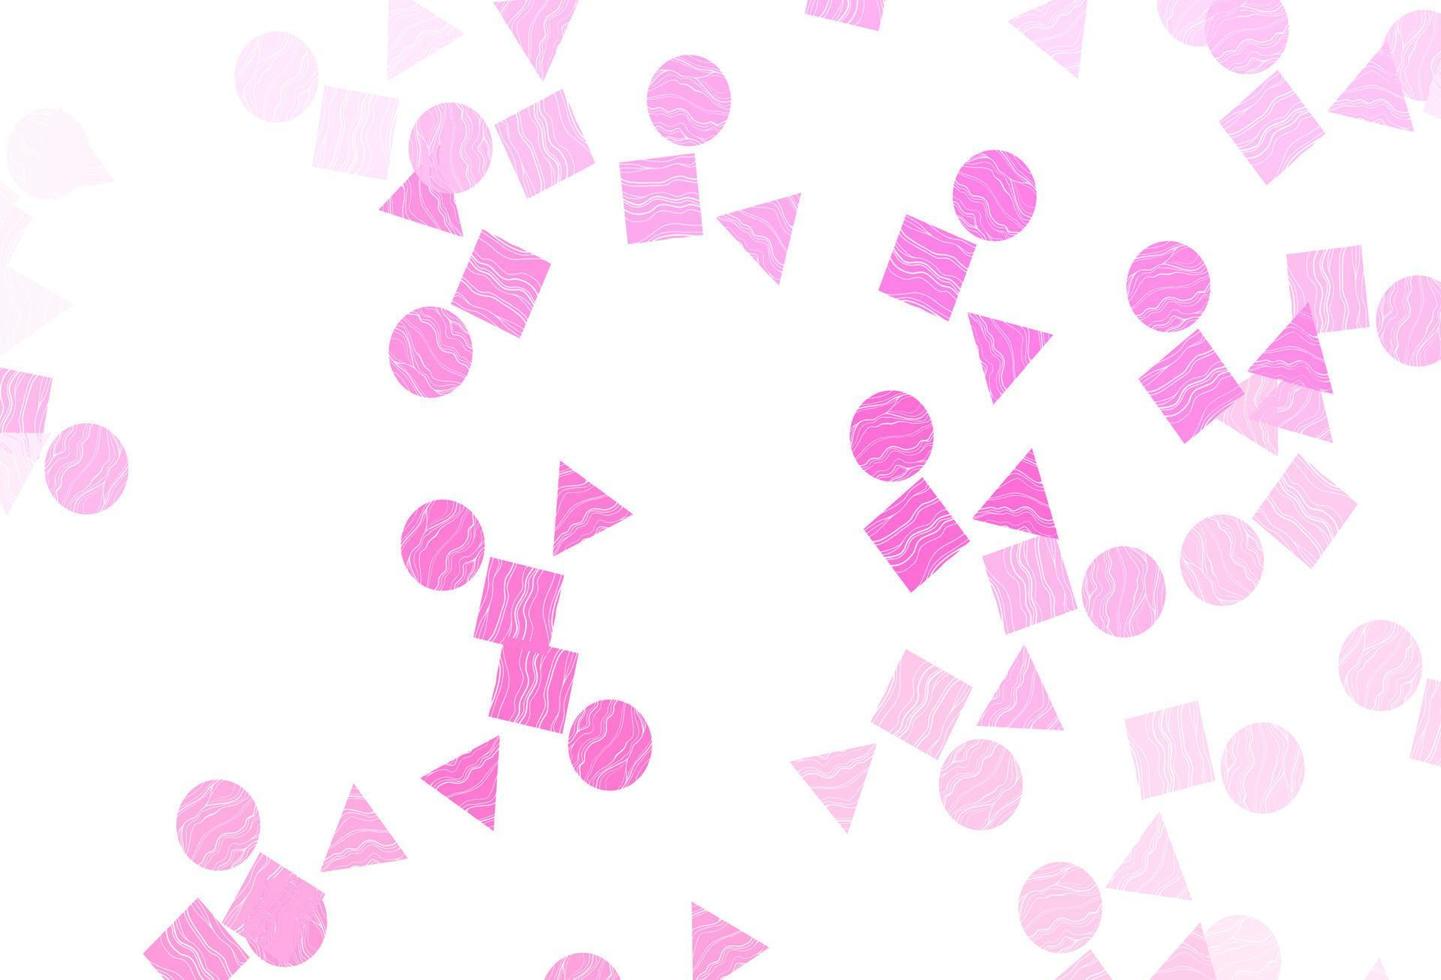 cubierta de vector rosa claro en estilo poligonal con círculos.